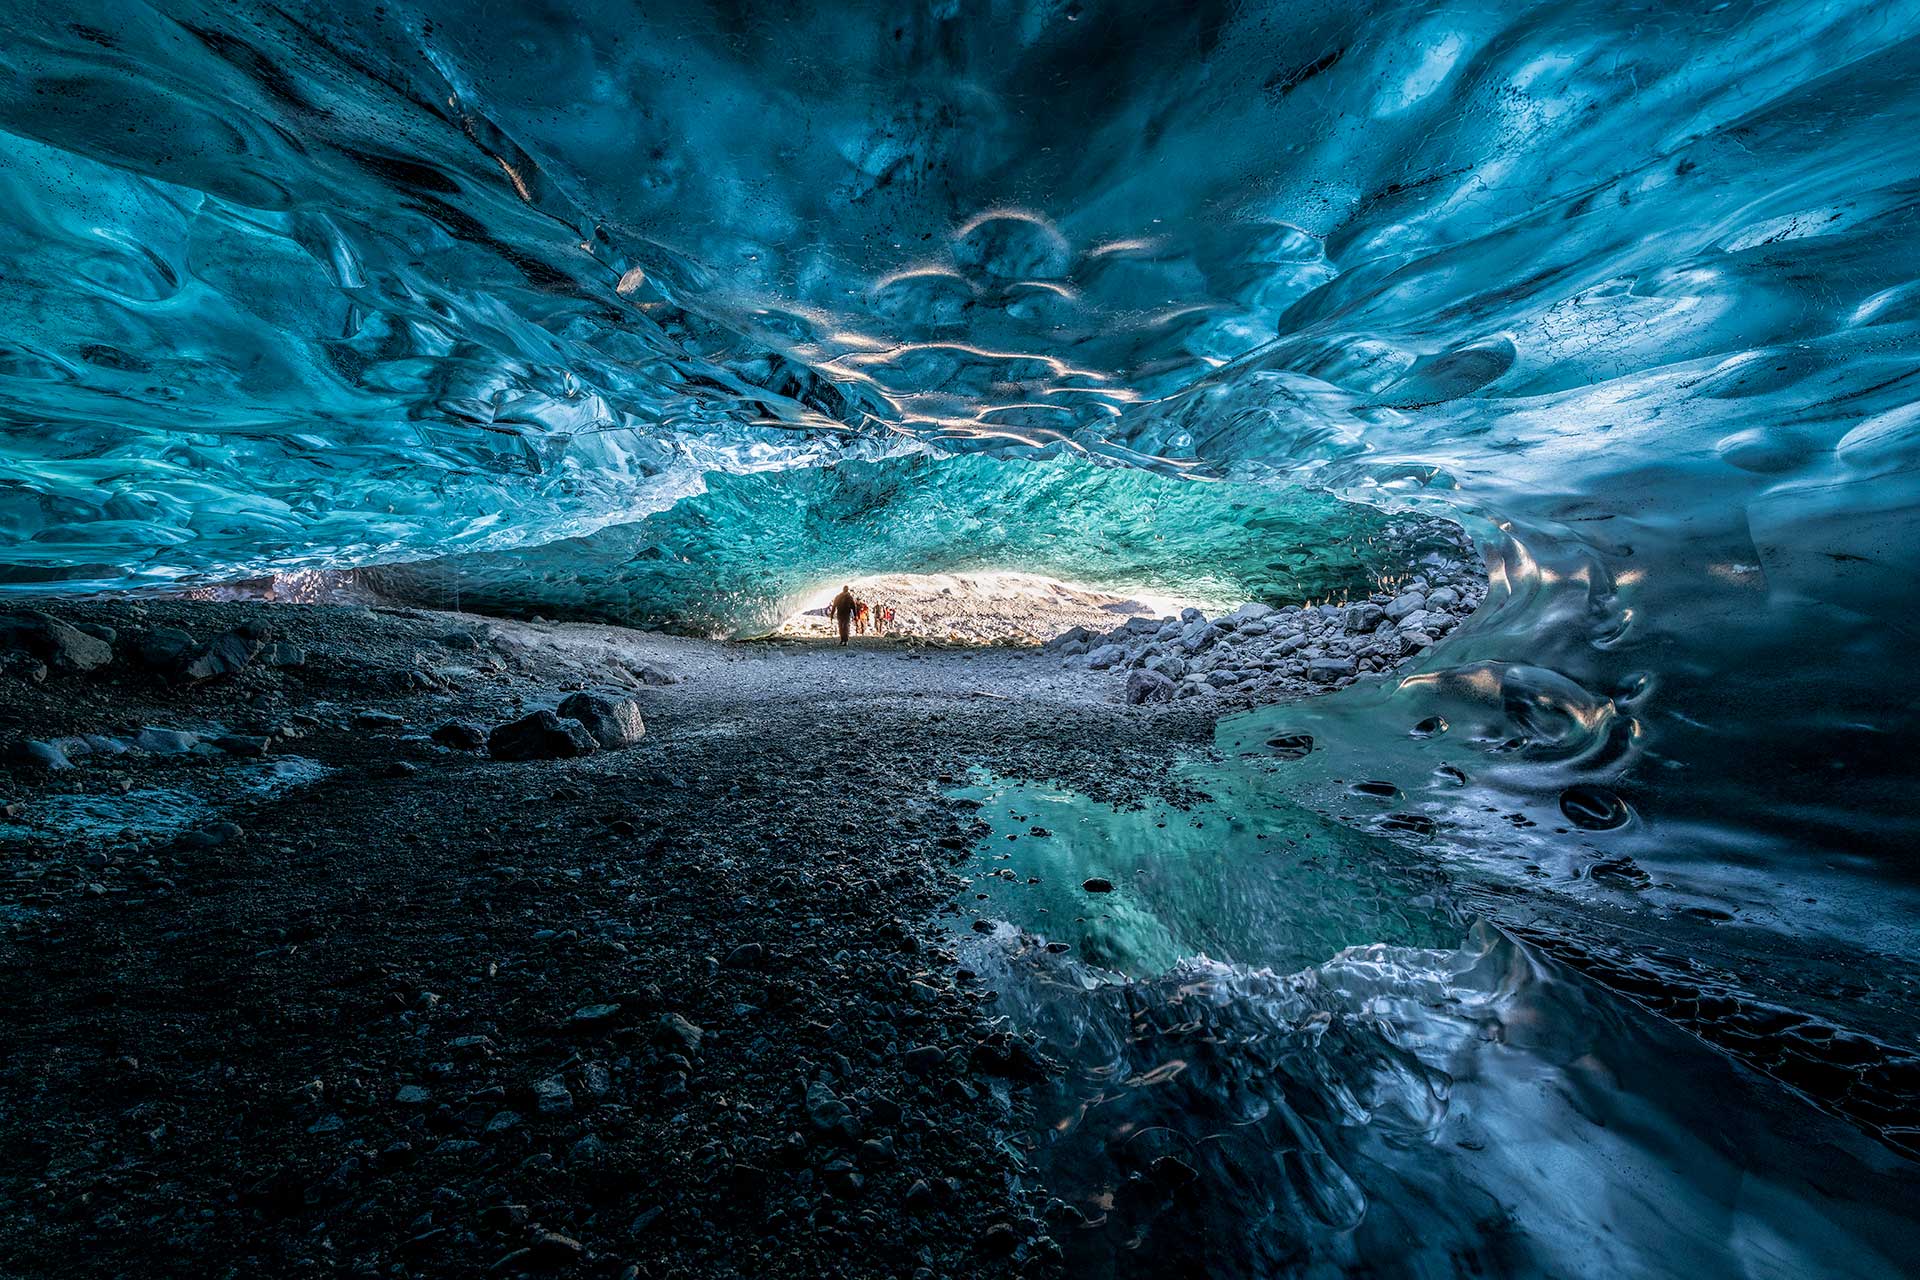 islandia-warsztaty-fotograficzne-jaskinie-2020